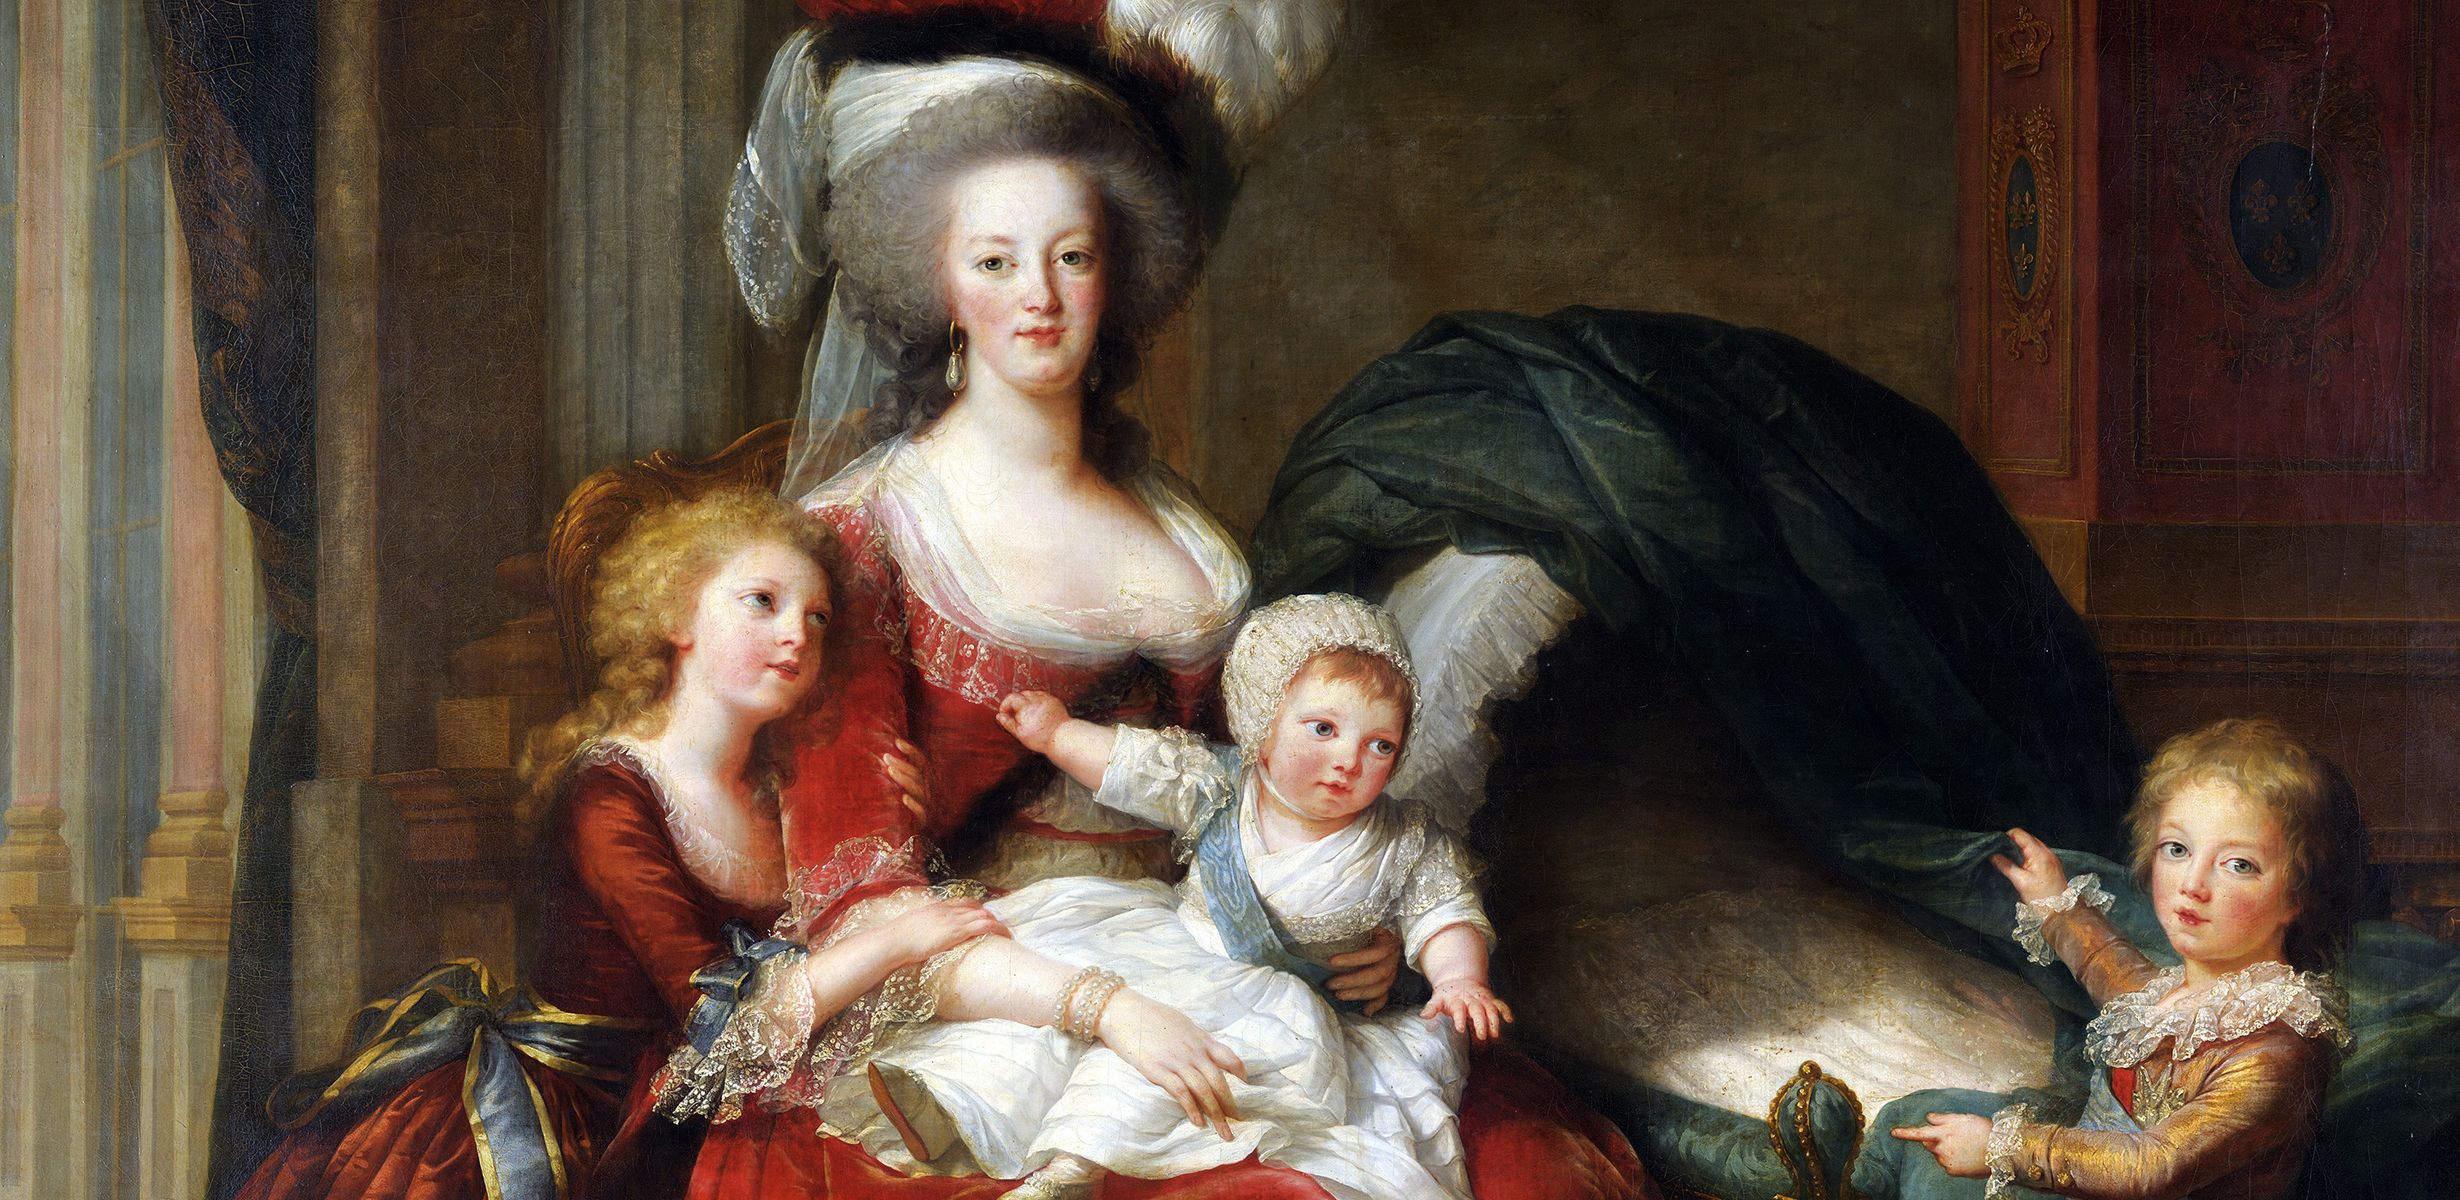 Marie Antoinette and King Louis XVI #LTKHoliday #LTKunder100 #LTKunder50